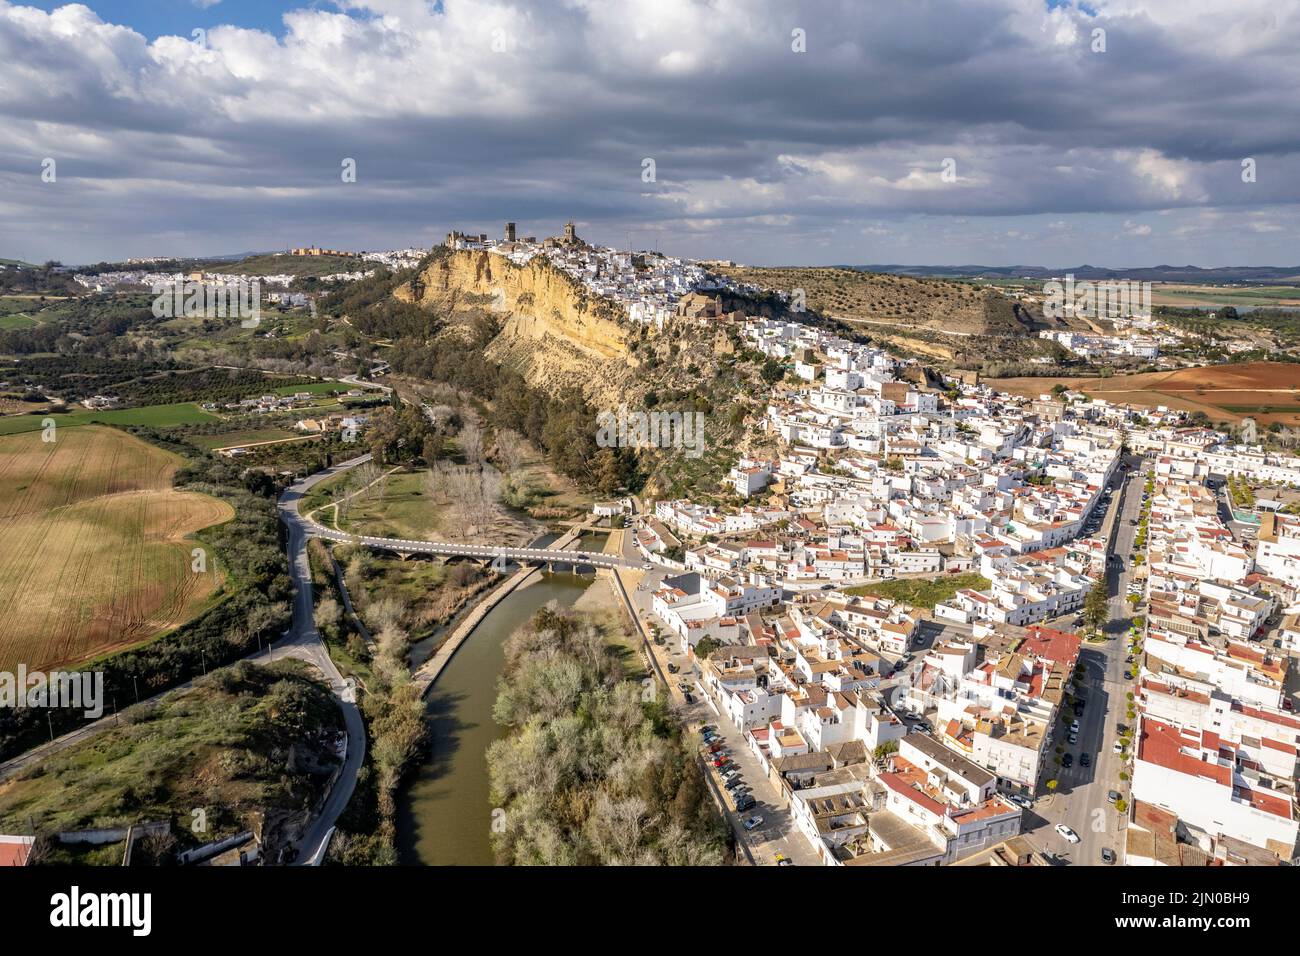 Die weissen Häuser von Arcos de la Frontera von oben gesehen, Andalusien, Spanien | Las casas blancas de Arcos de la Frontera vistas desde arriba, Andalu Foto de stock